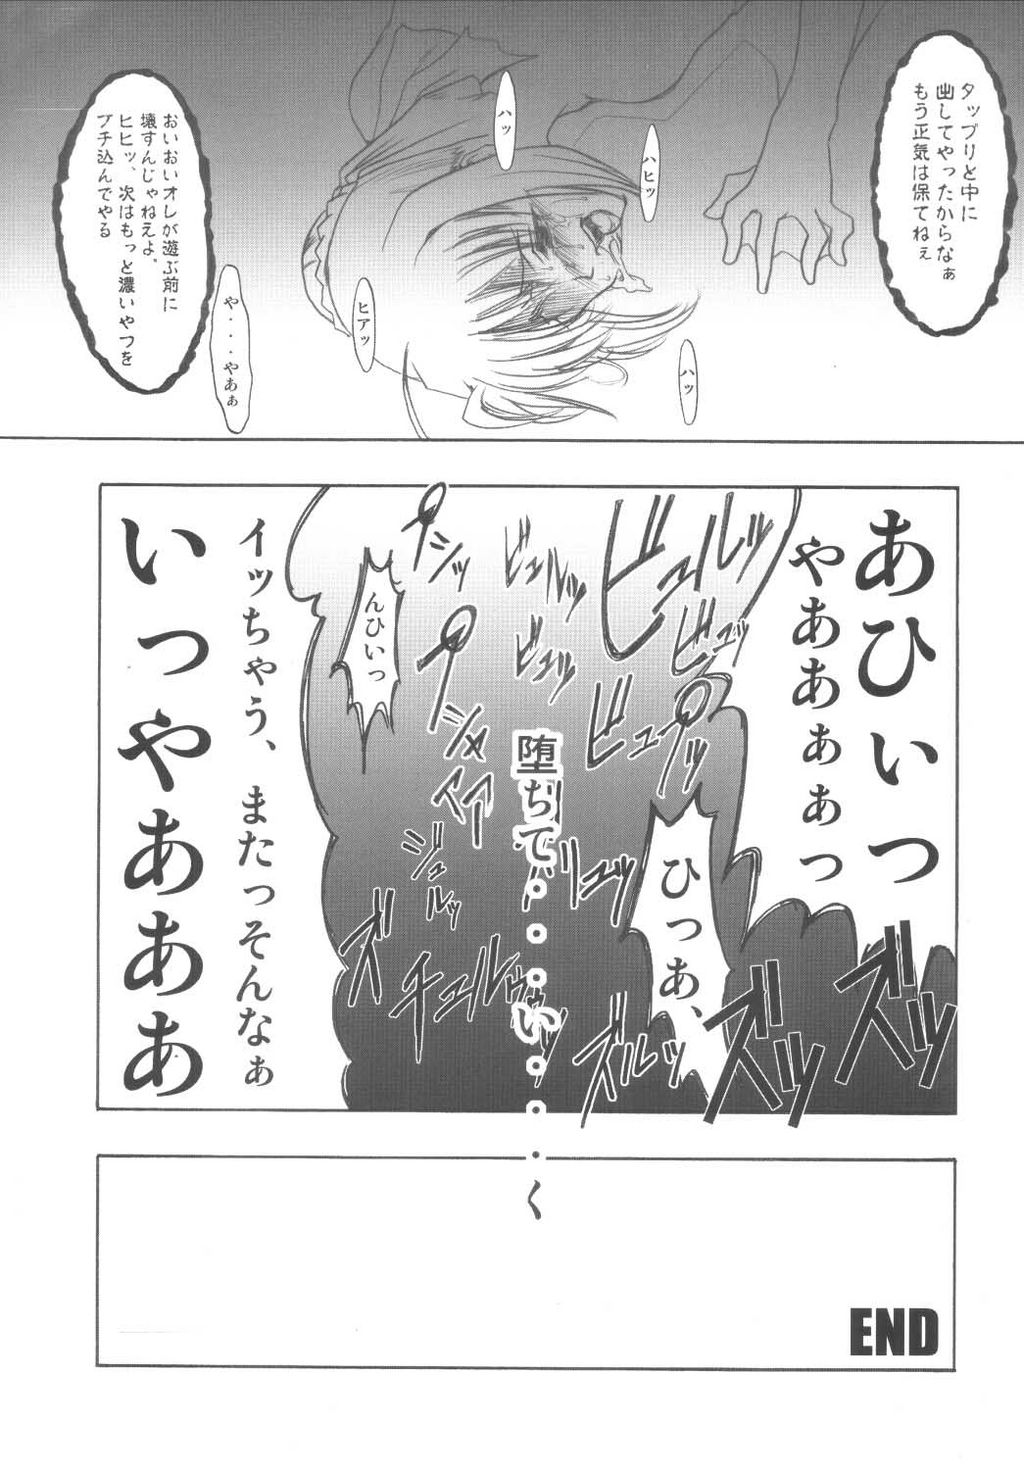 (Mimiket 10) [FAKESTAR (Miharu)] S (Fate/stay night) (みみけっと 10) [FAKESTAR (美春)] S (Fate/stay night)